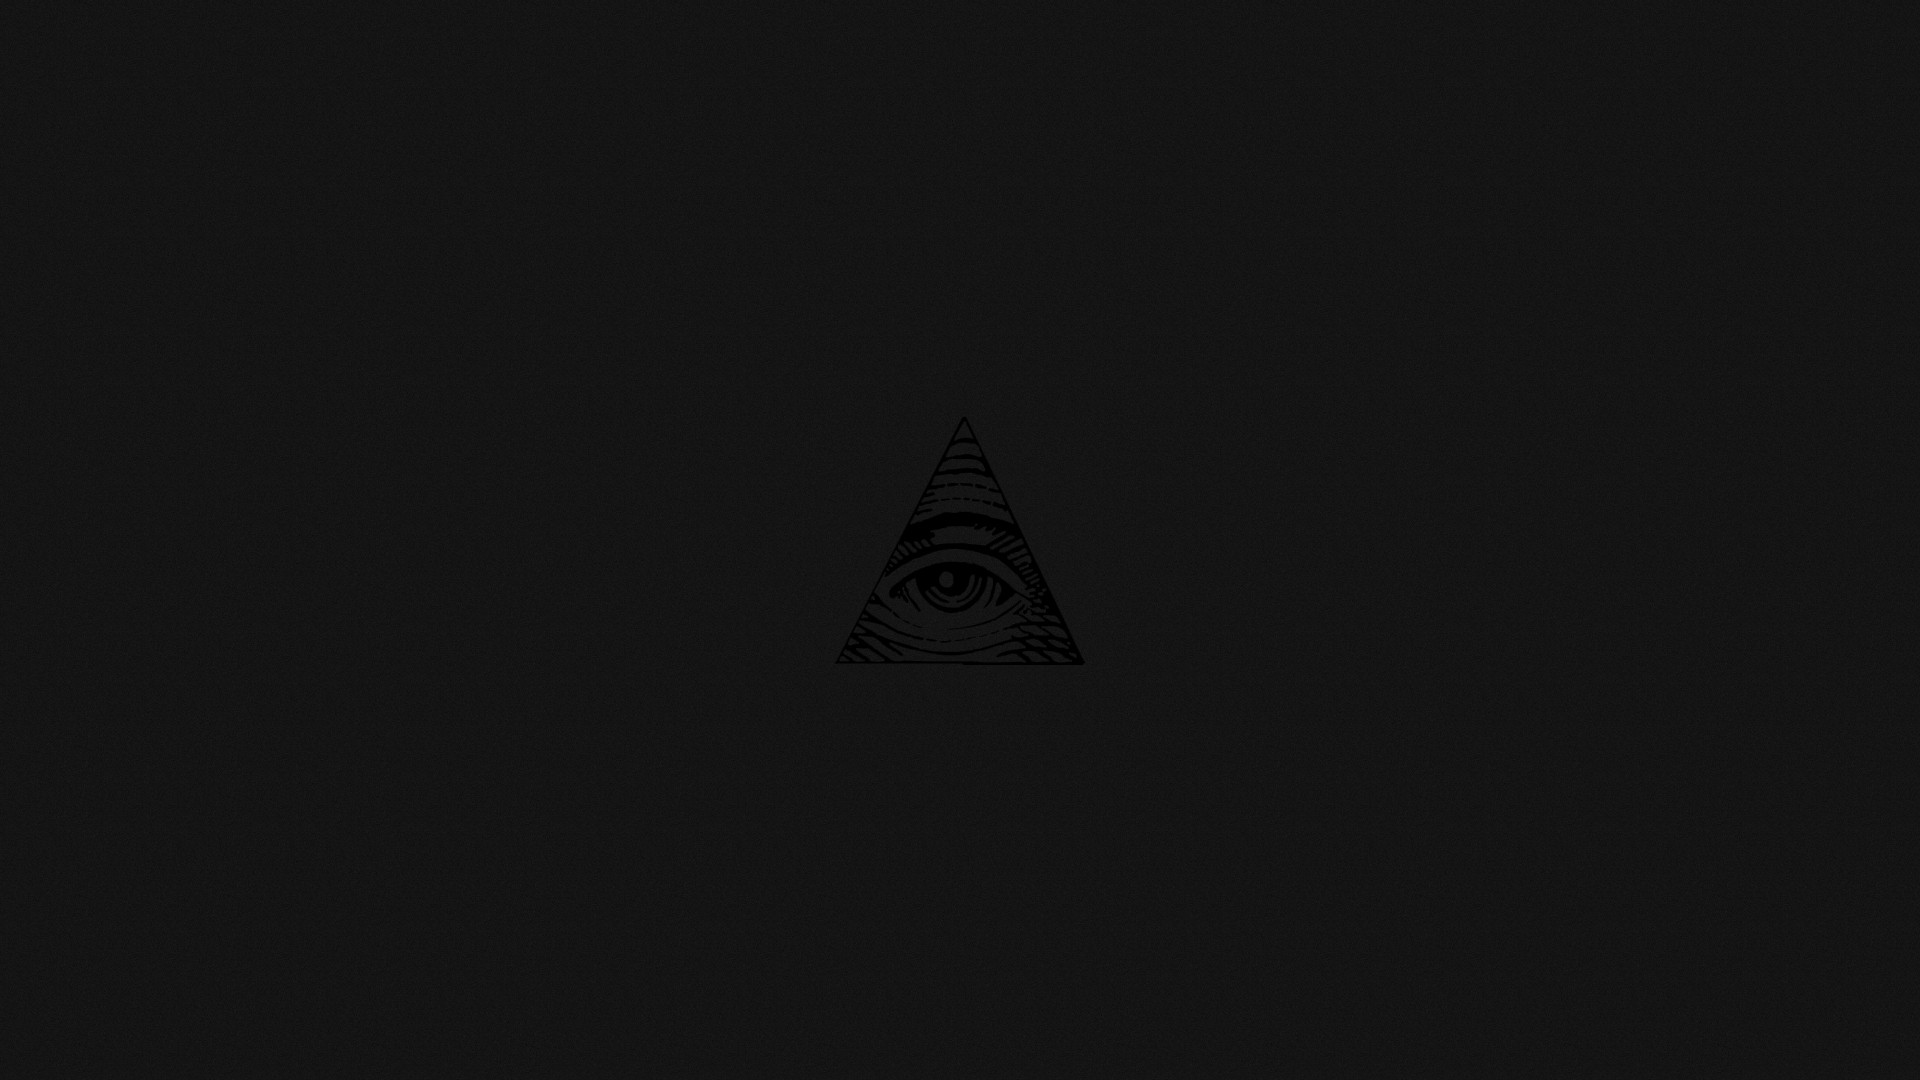 Illuminati Wallpaper iPhone On